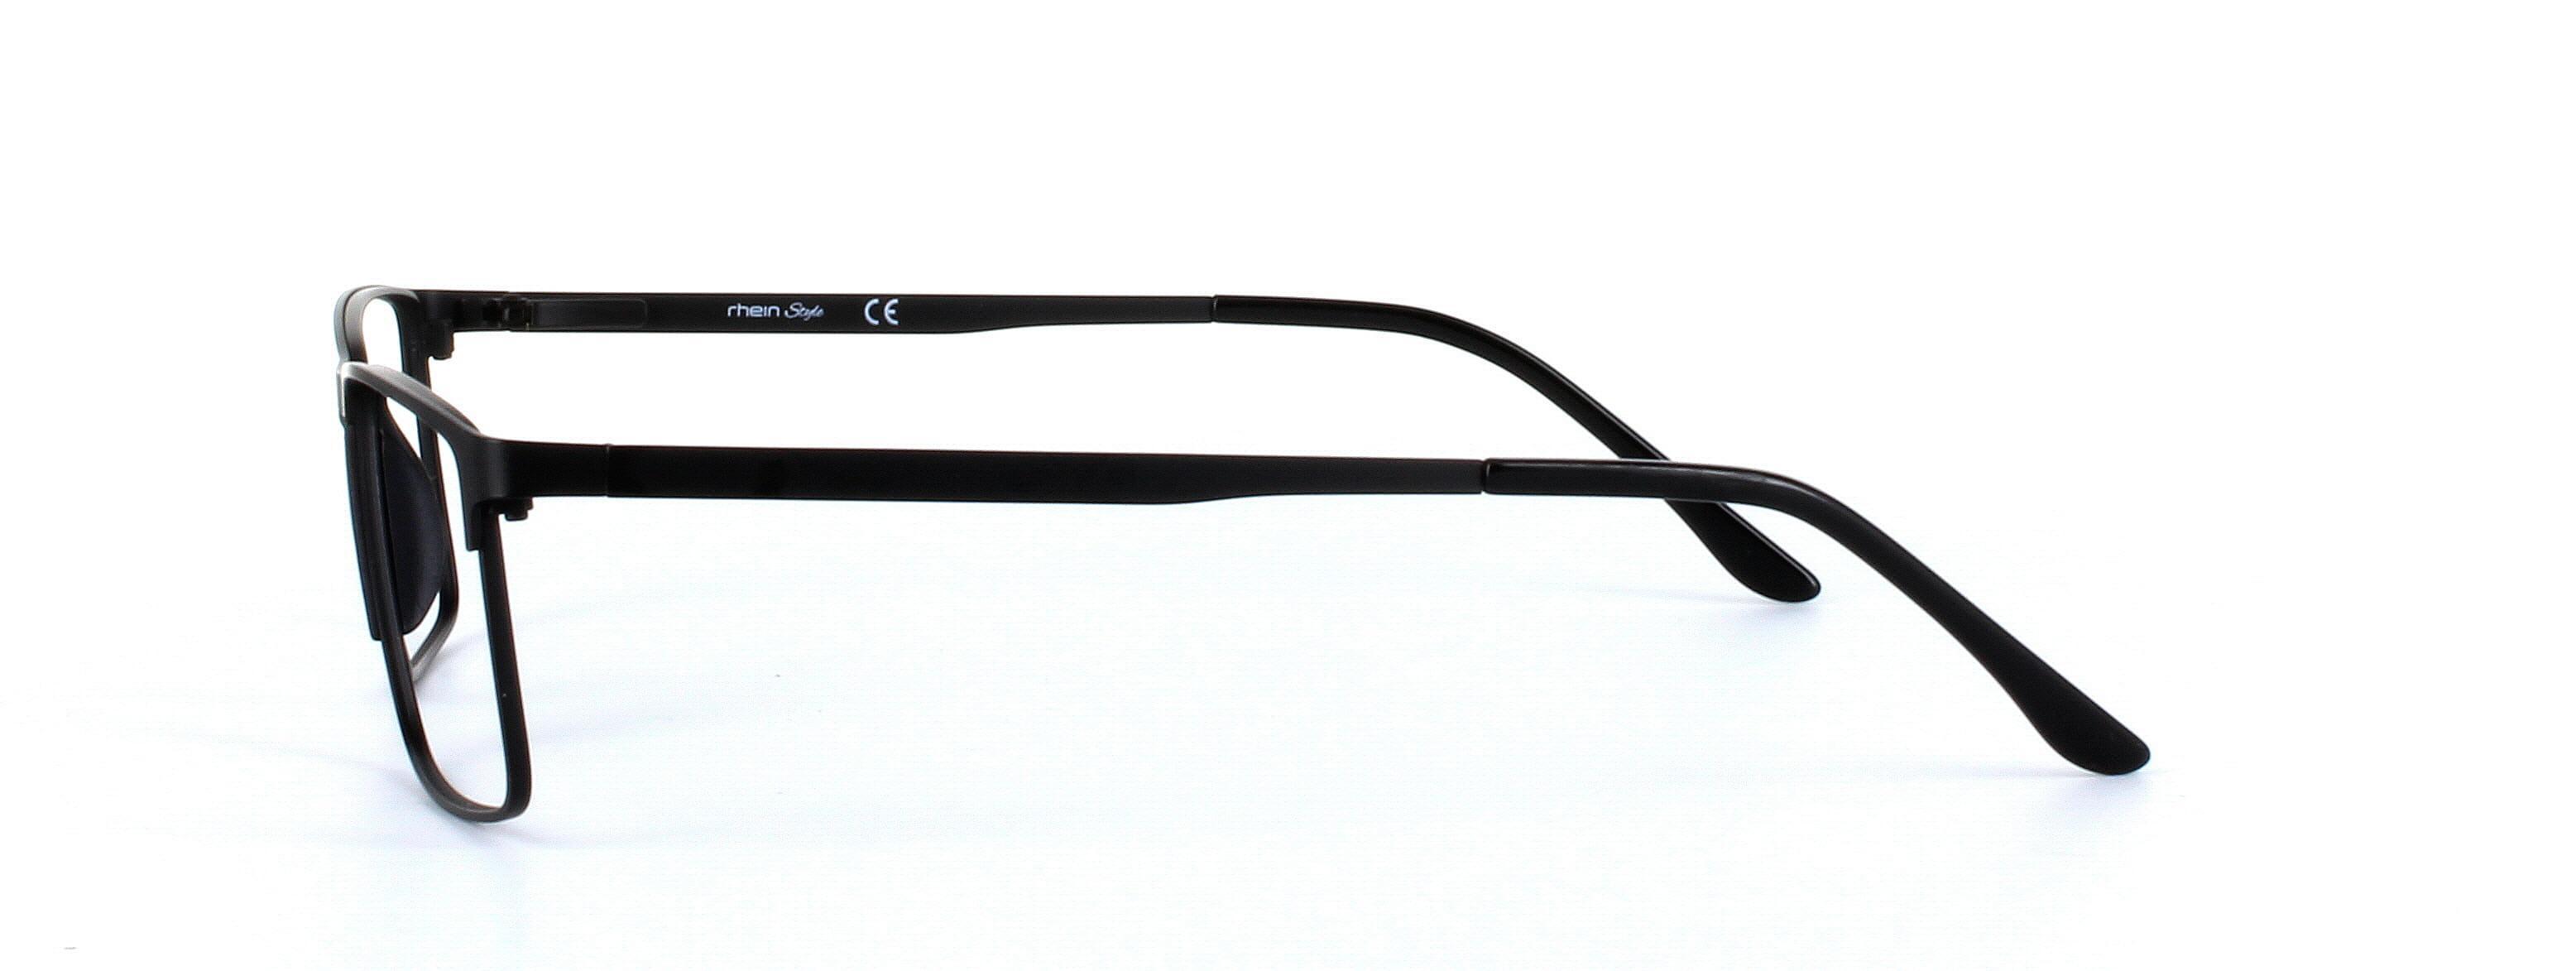 Burnaby Black Full Rim Rectangular Metal Glasses - Image View 2